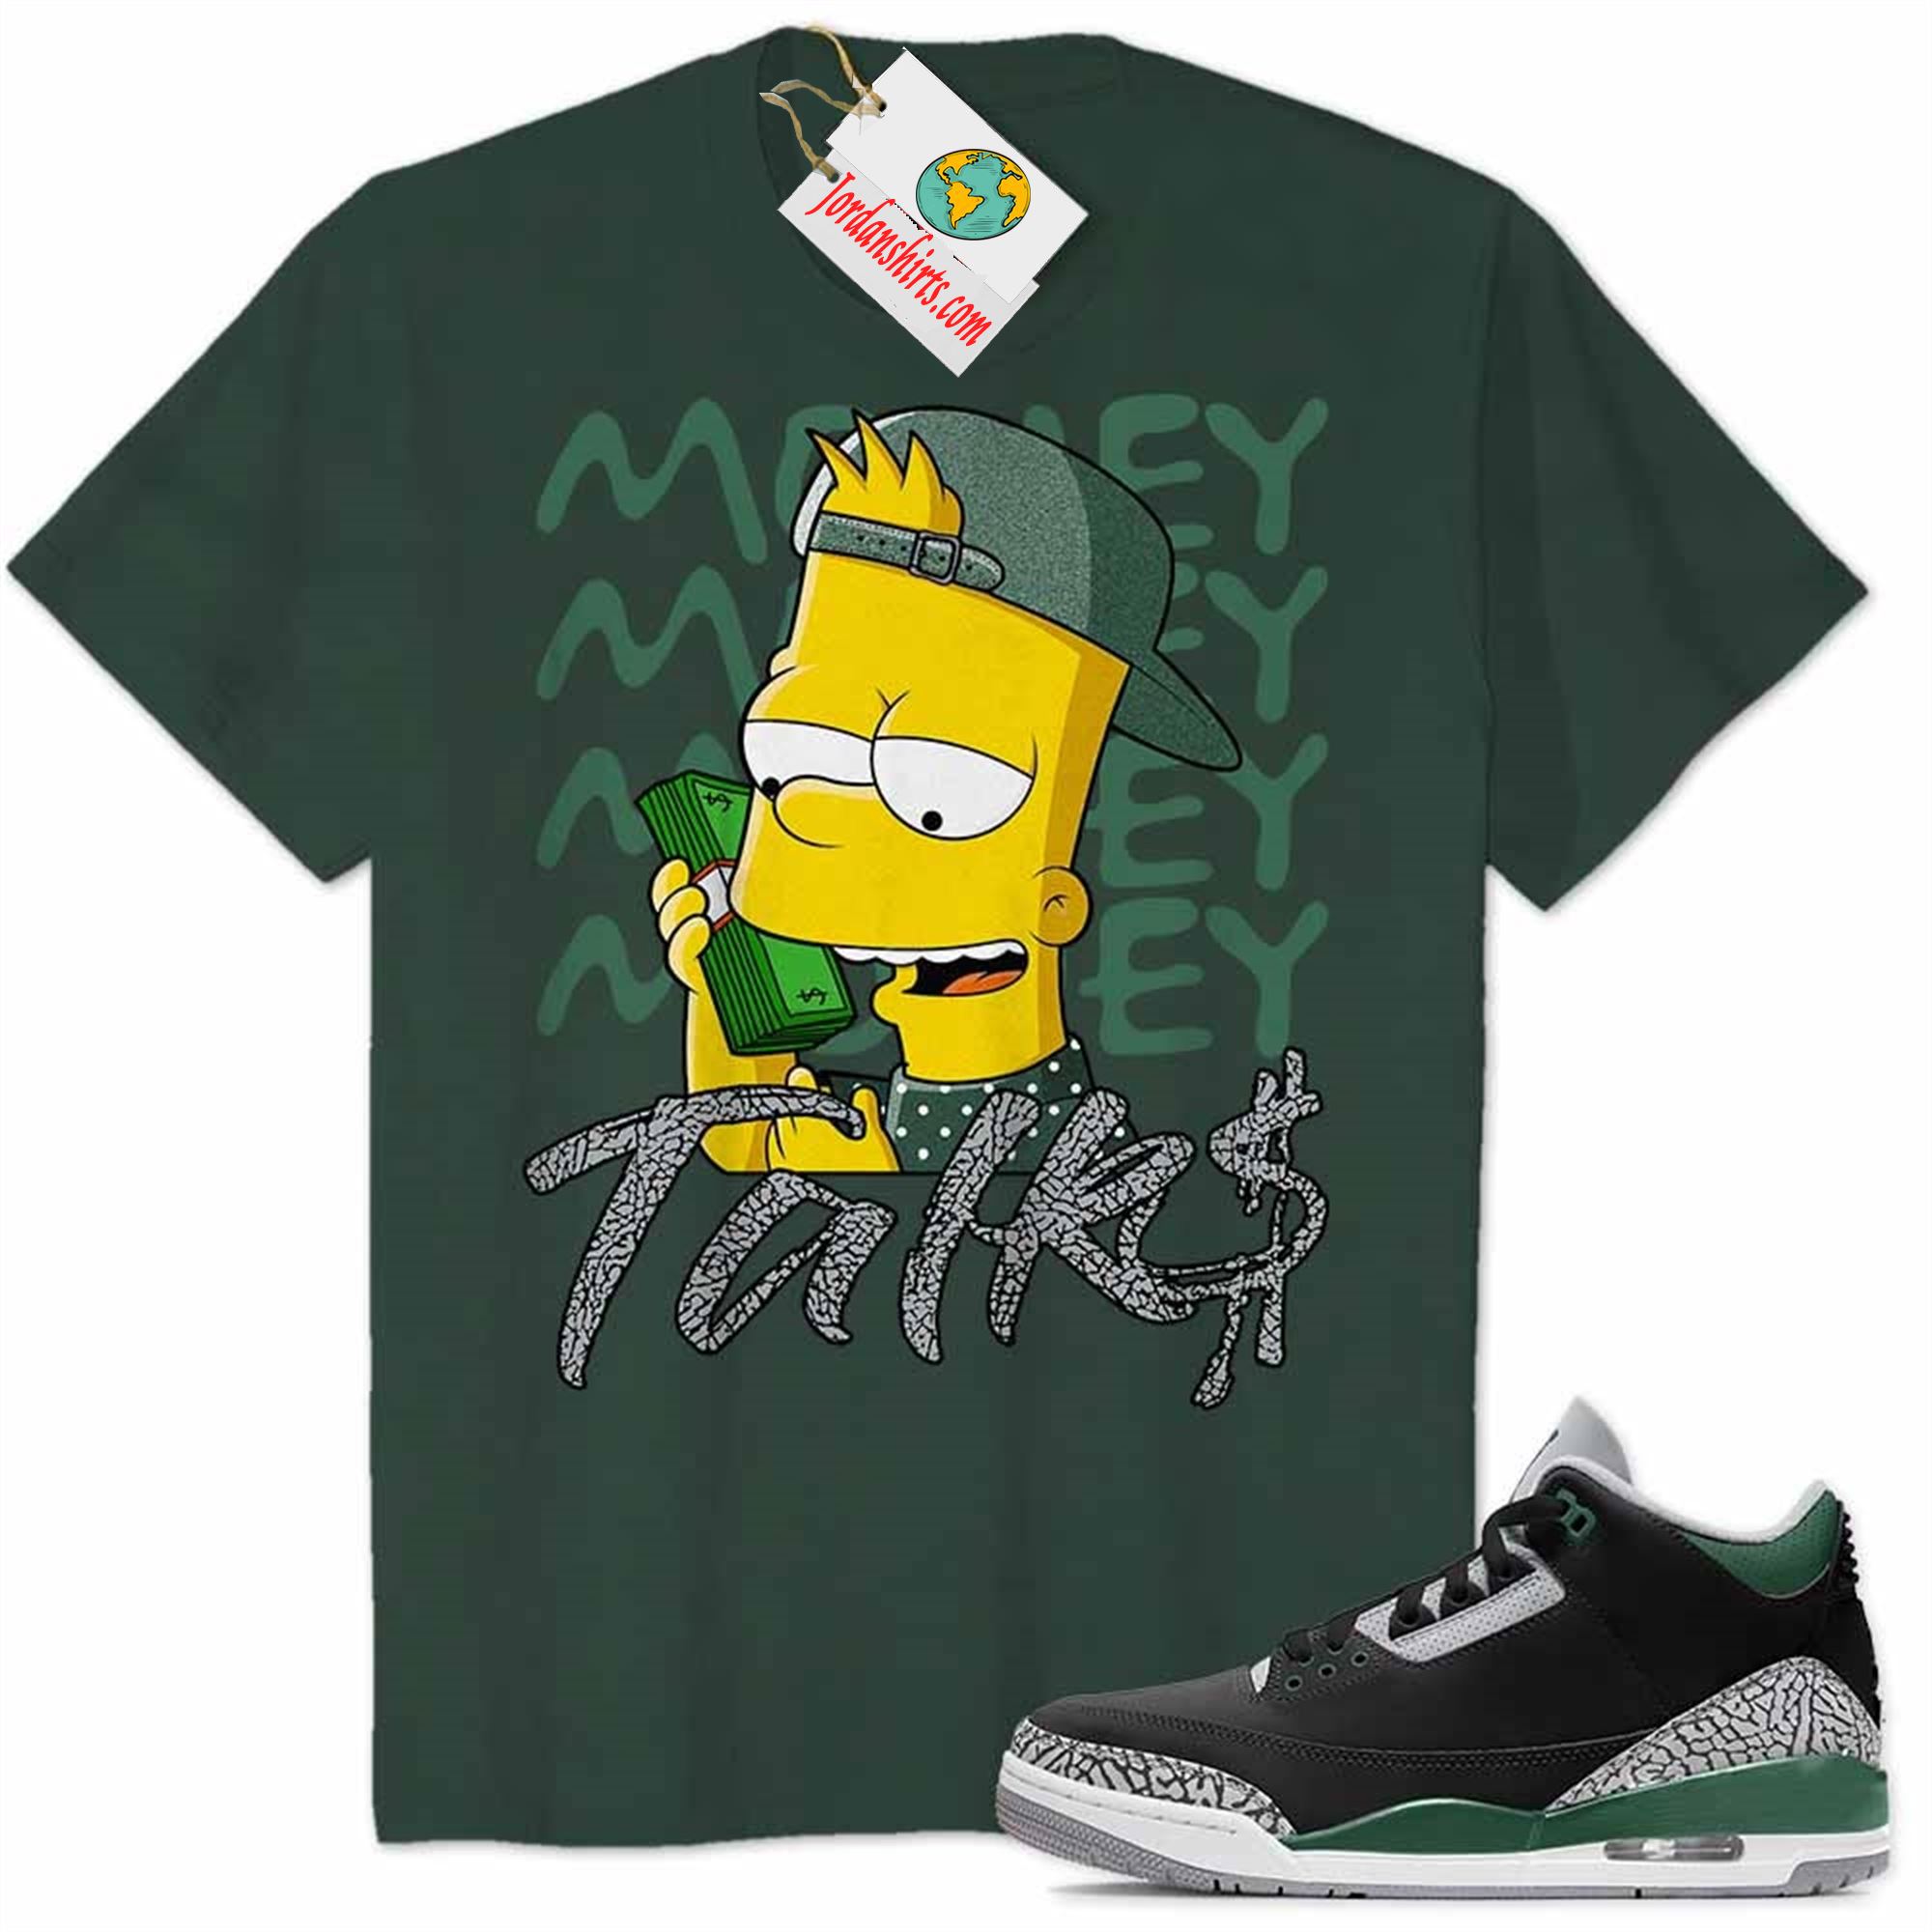 Jordan 3 Shirt, Money Talks Bart Simpson Rich Forest Air Jordan 3 Pine Green 3s Size Up To 5xl